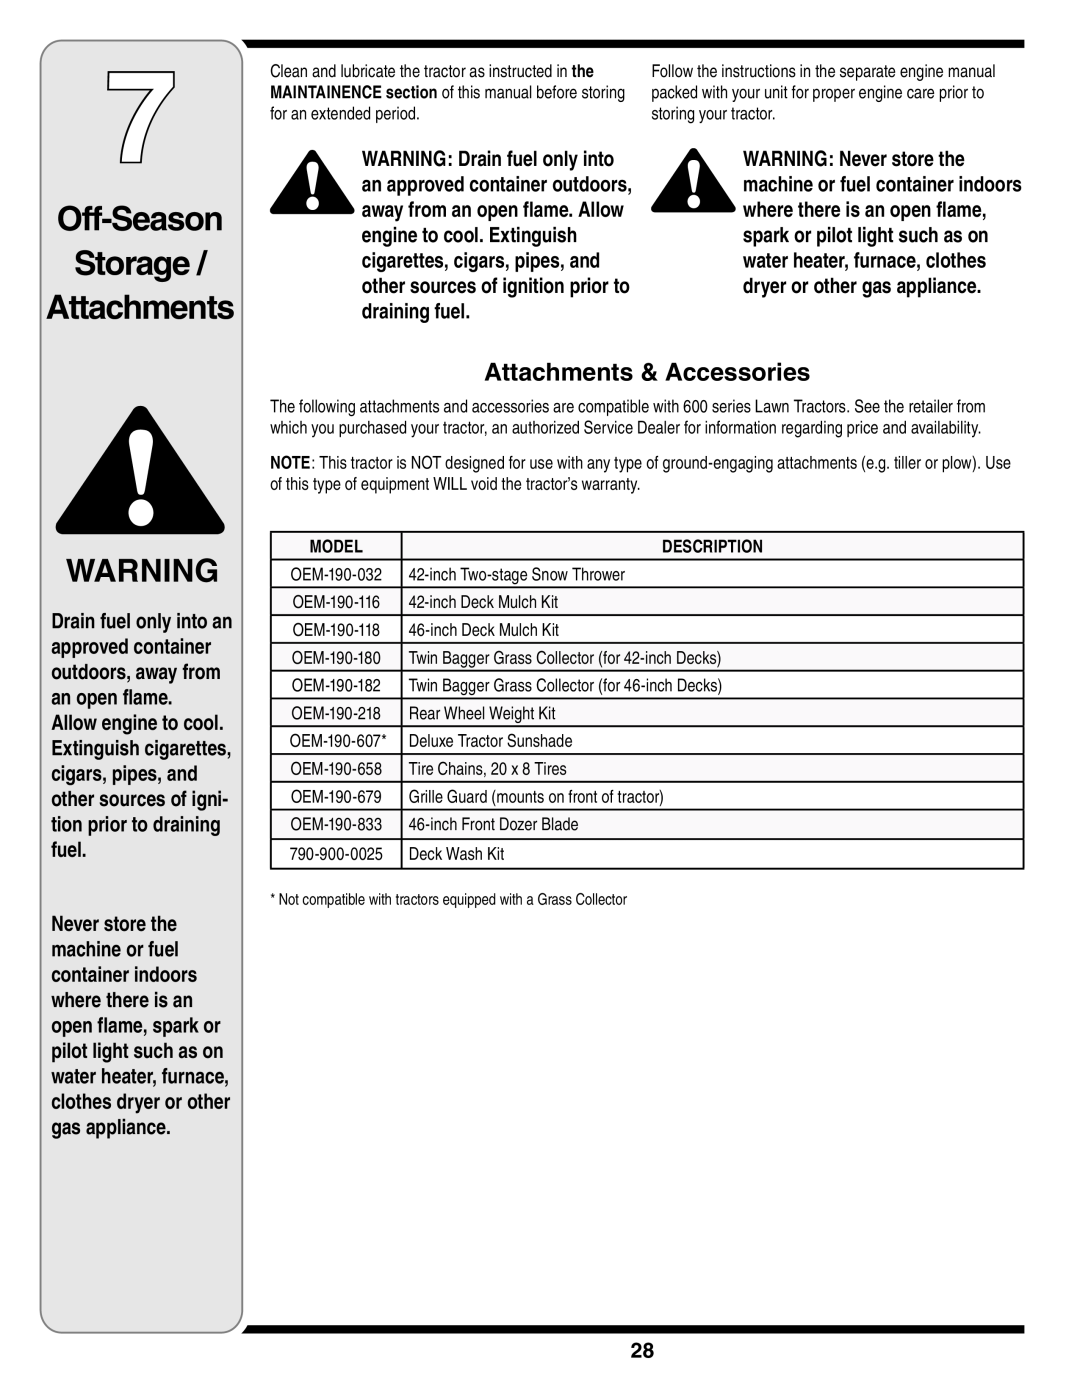 MTD 616 warranty Attachments & Accessories, Off-Season Storage Attachments, Model, Description 